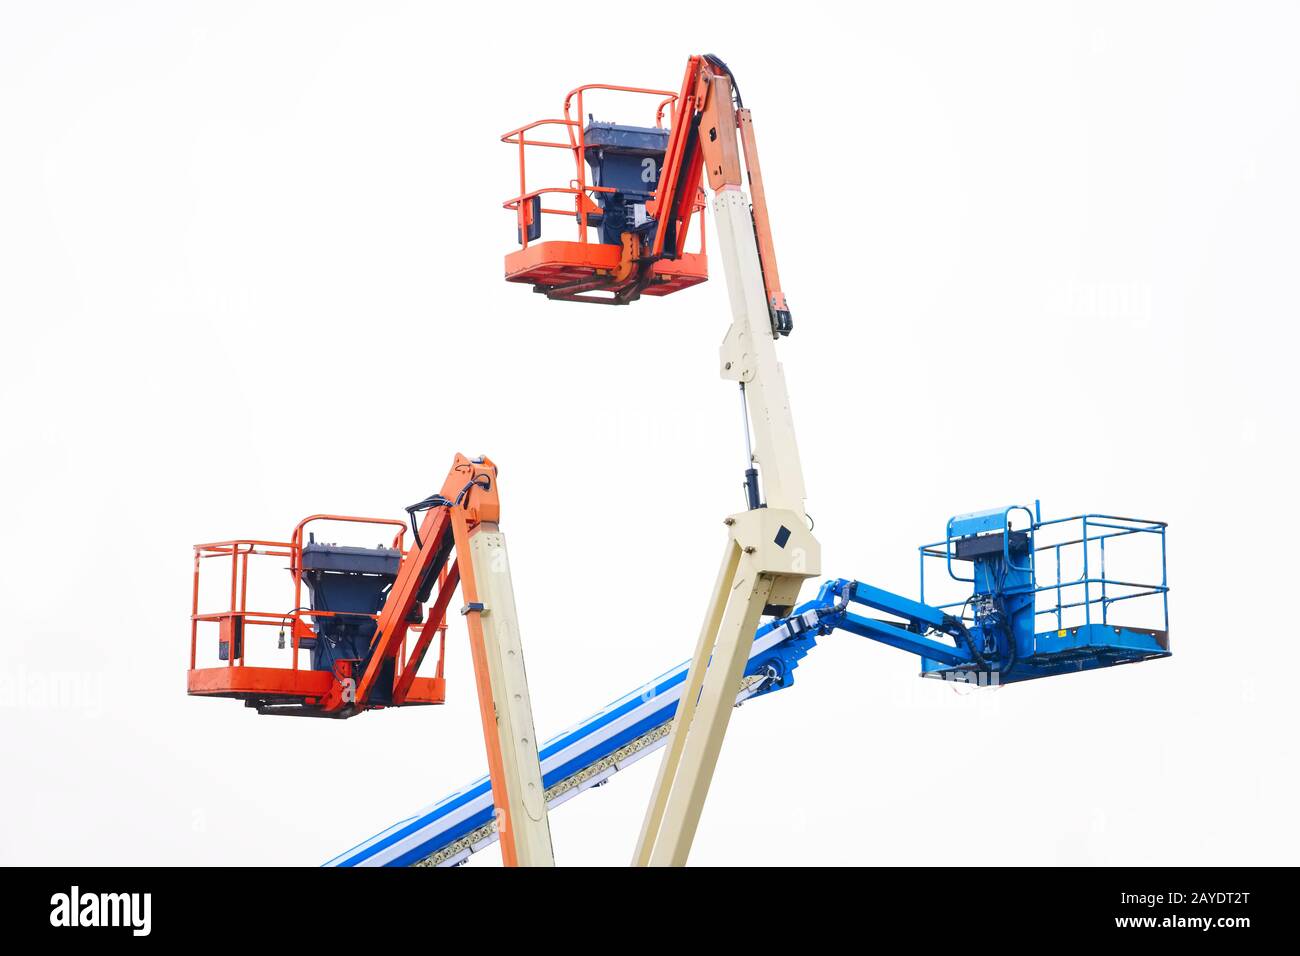 Accédez à l'équipement de la plate-forme alimenté dans le ciel en bleu orange et jaune pour une sécurité de hauteur de plate-forme de travail élevée sur le chantier de construction Banque D'Images